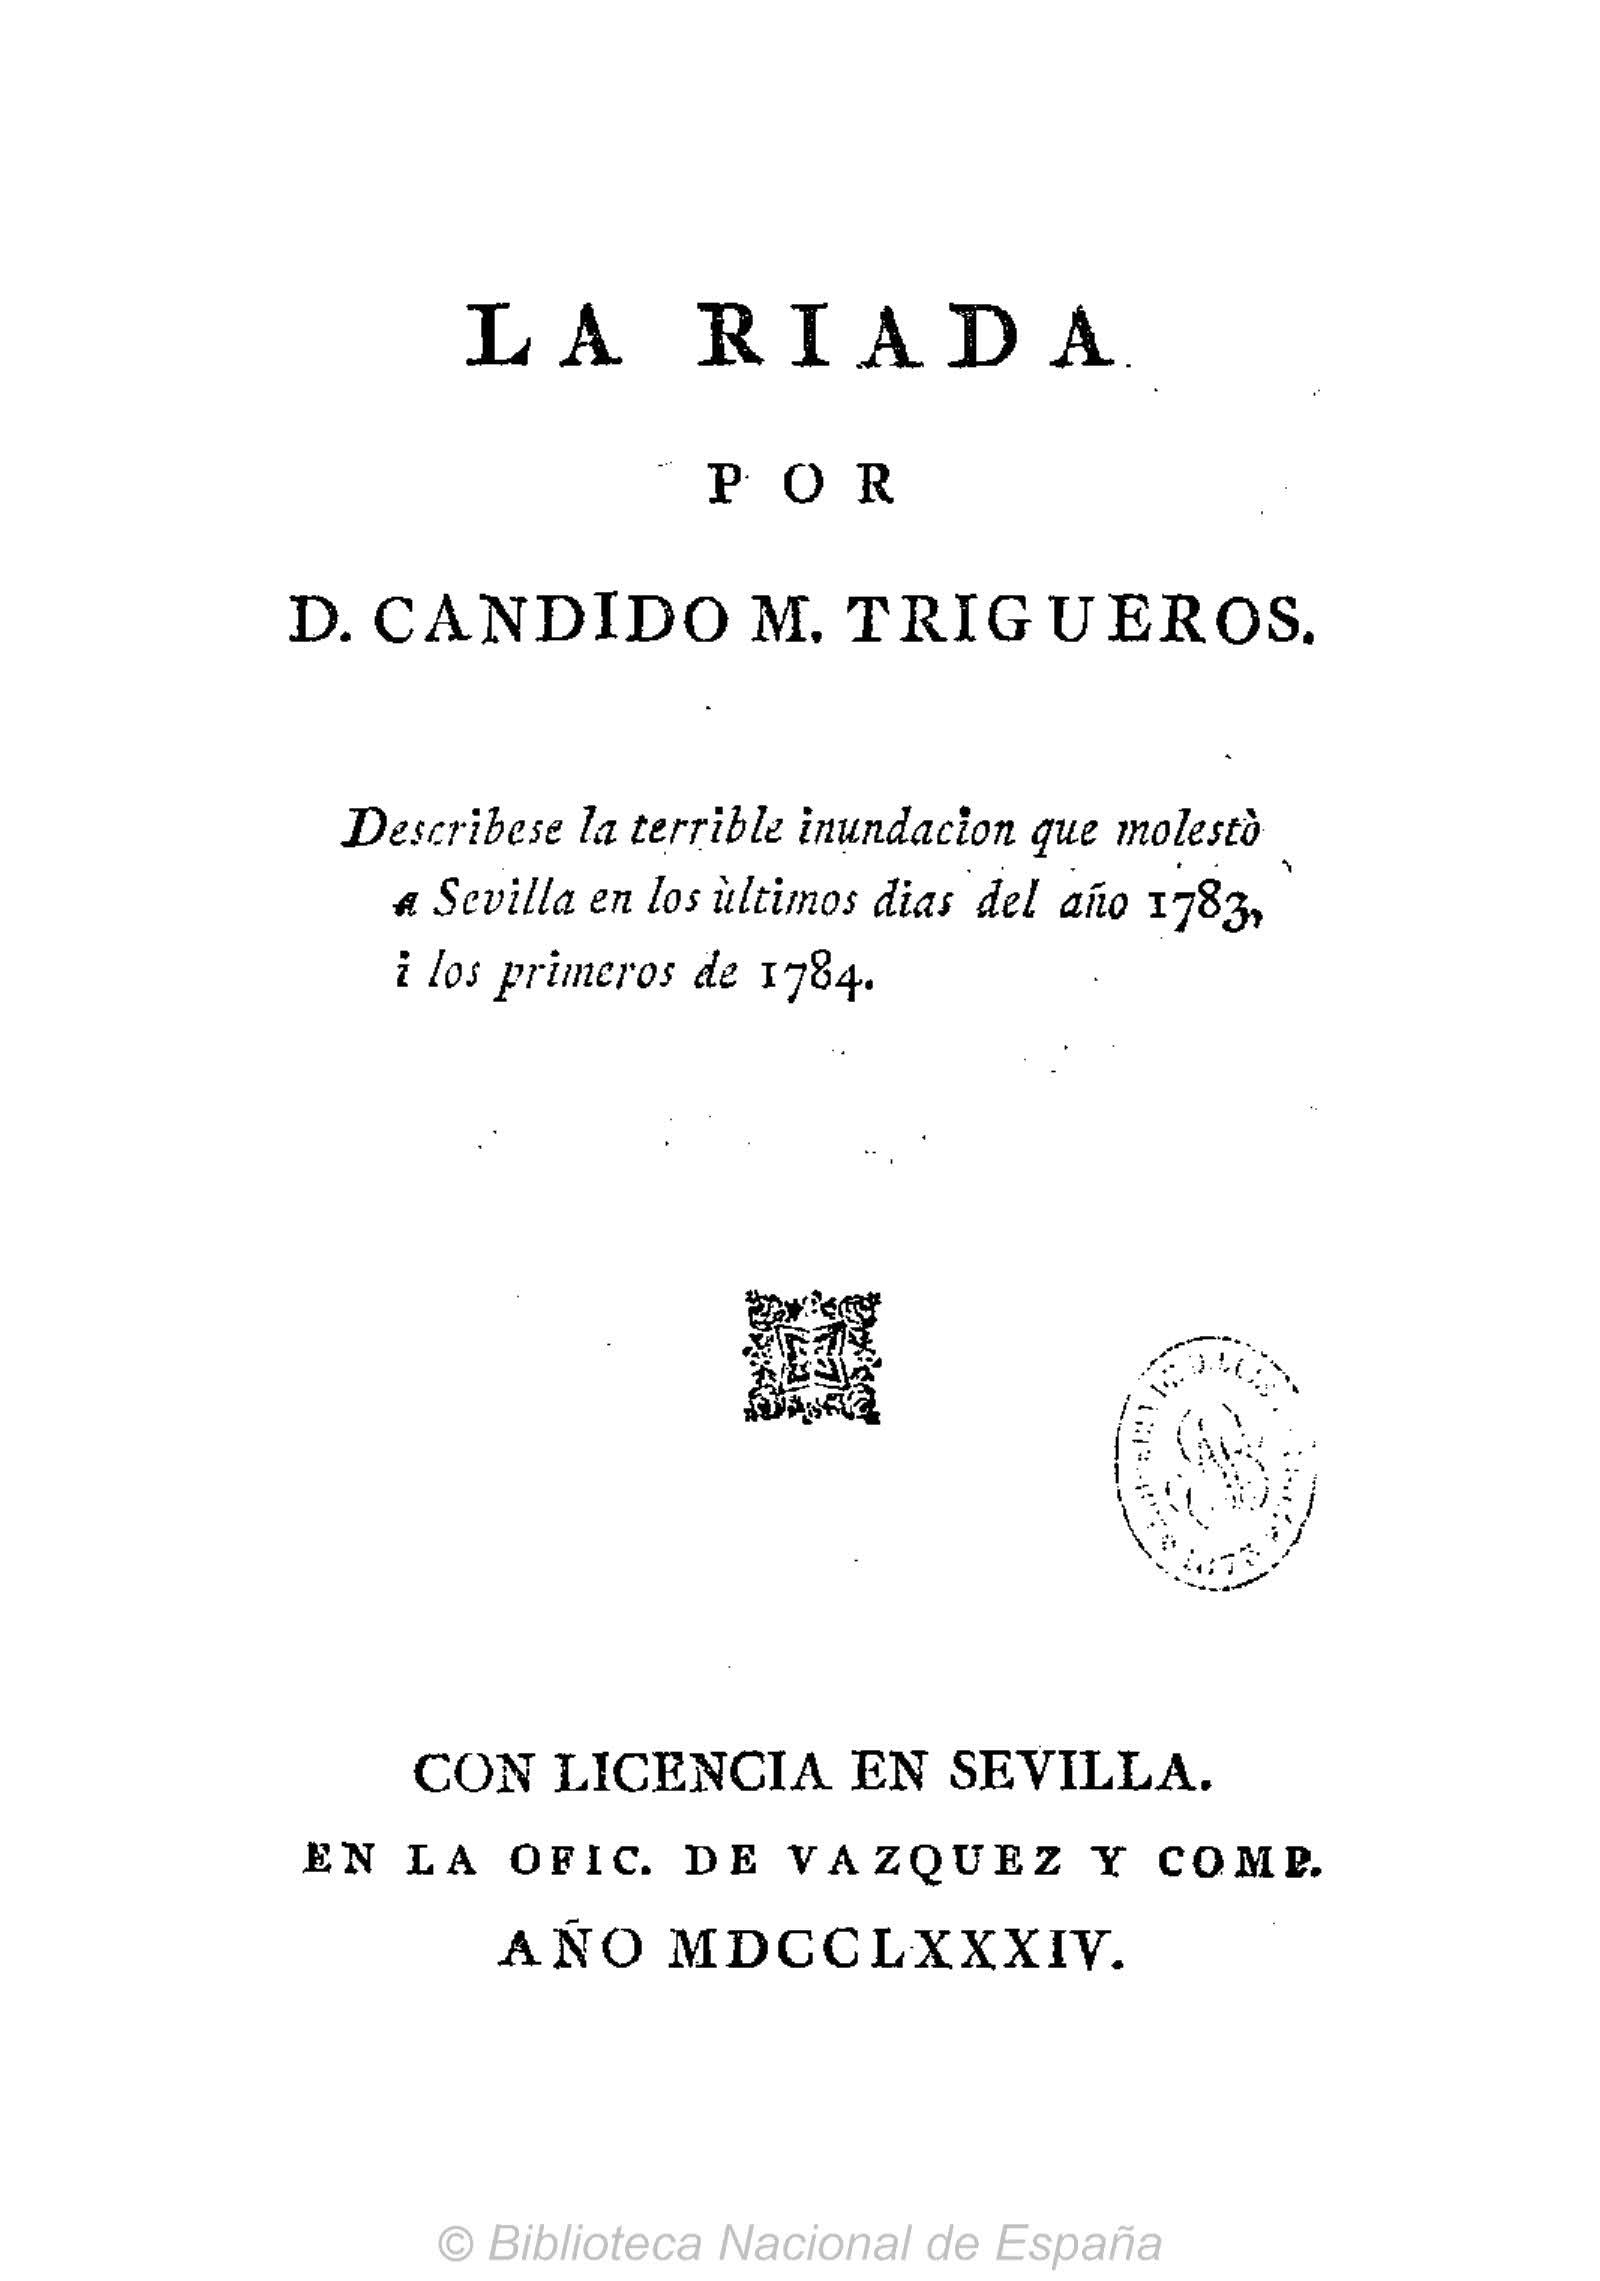 La Riada por D. Candido M. Trigueros